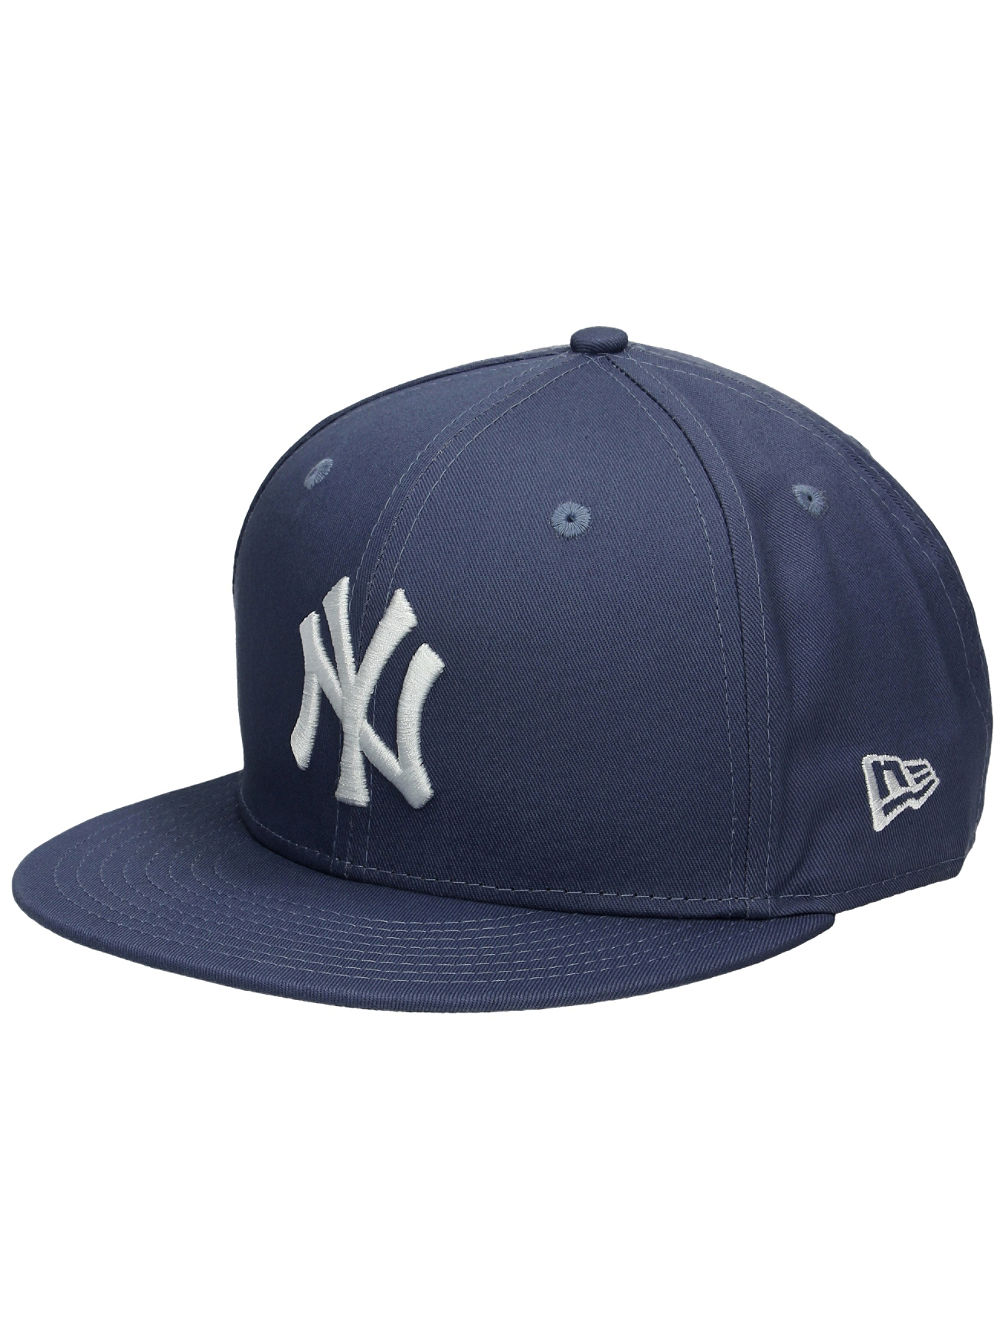 MLB League Essential 950 Cappello